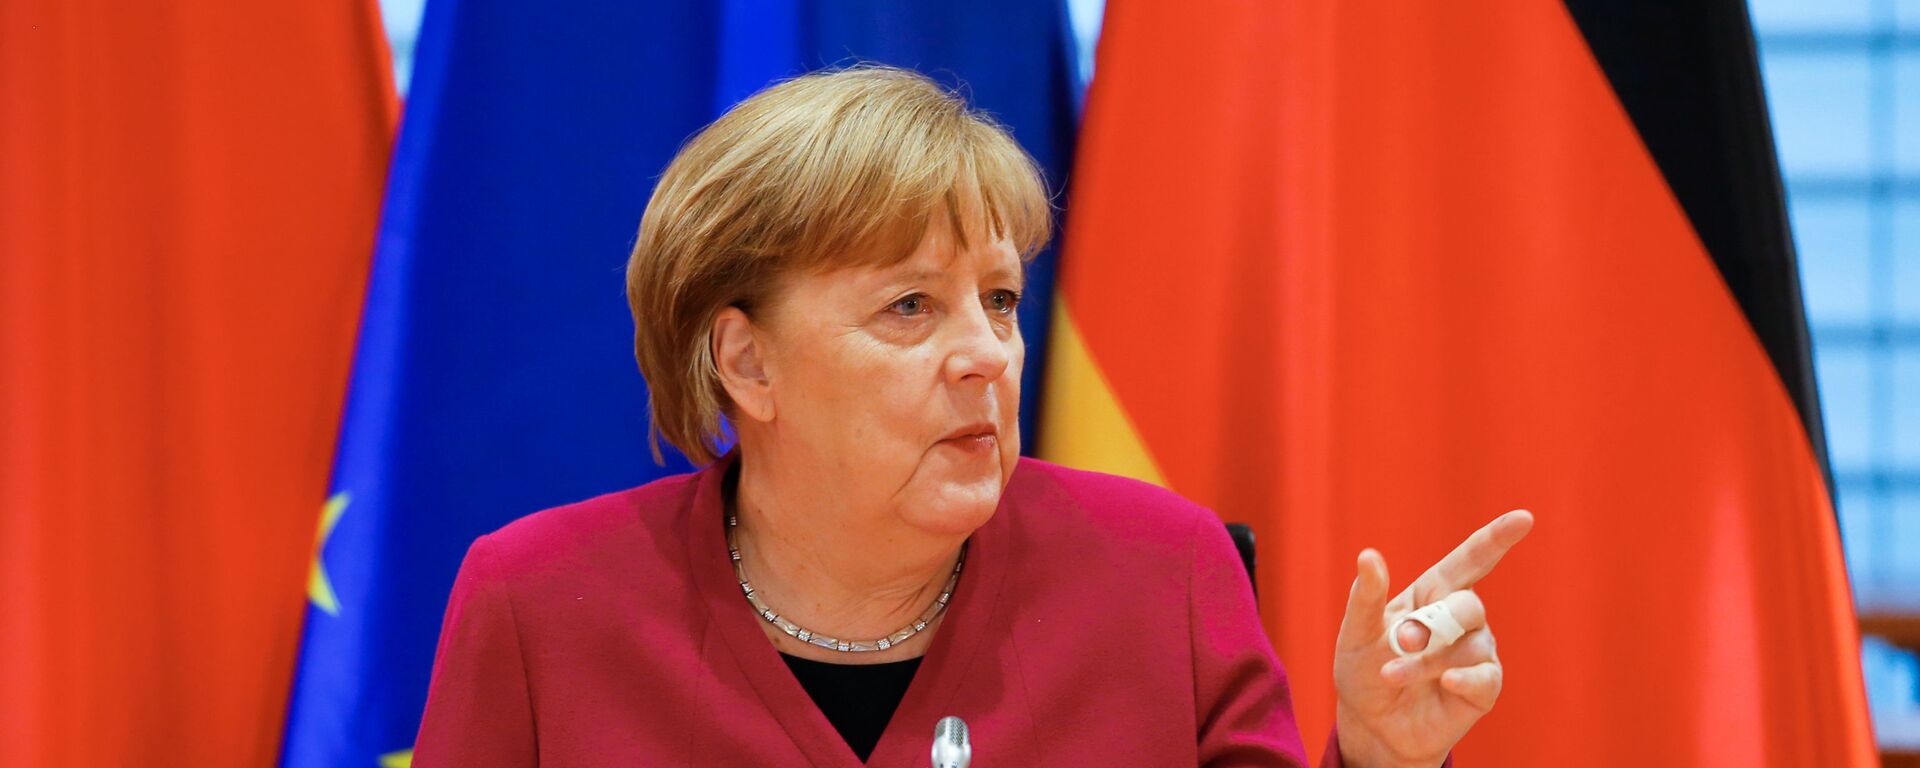 Vokietijos kanclerė Angela Merkel - Sputnik Lietuva, 1920, 25.05.2021